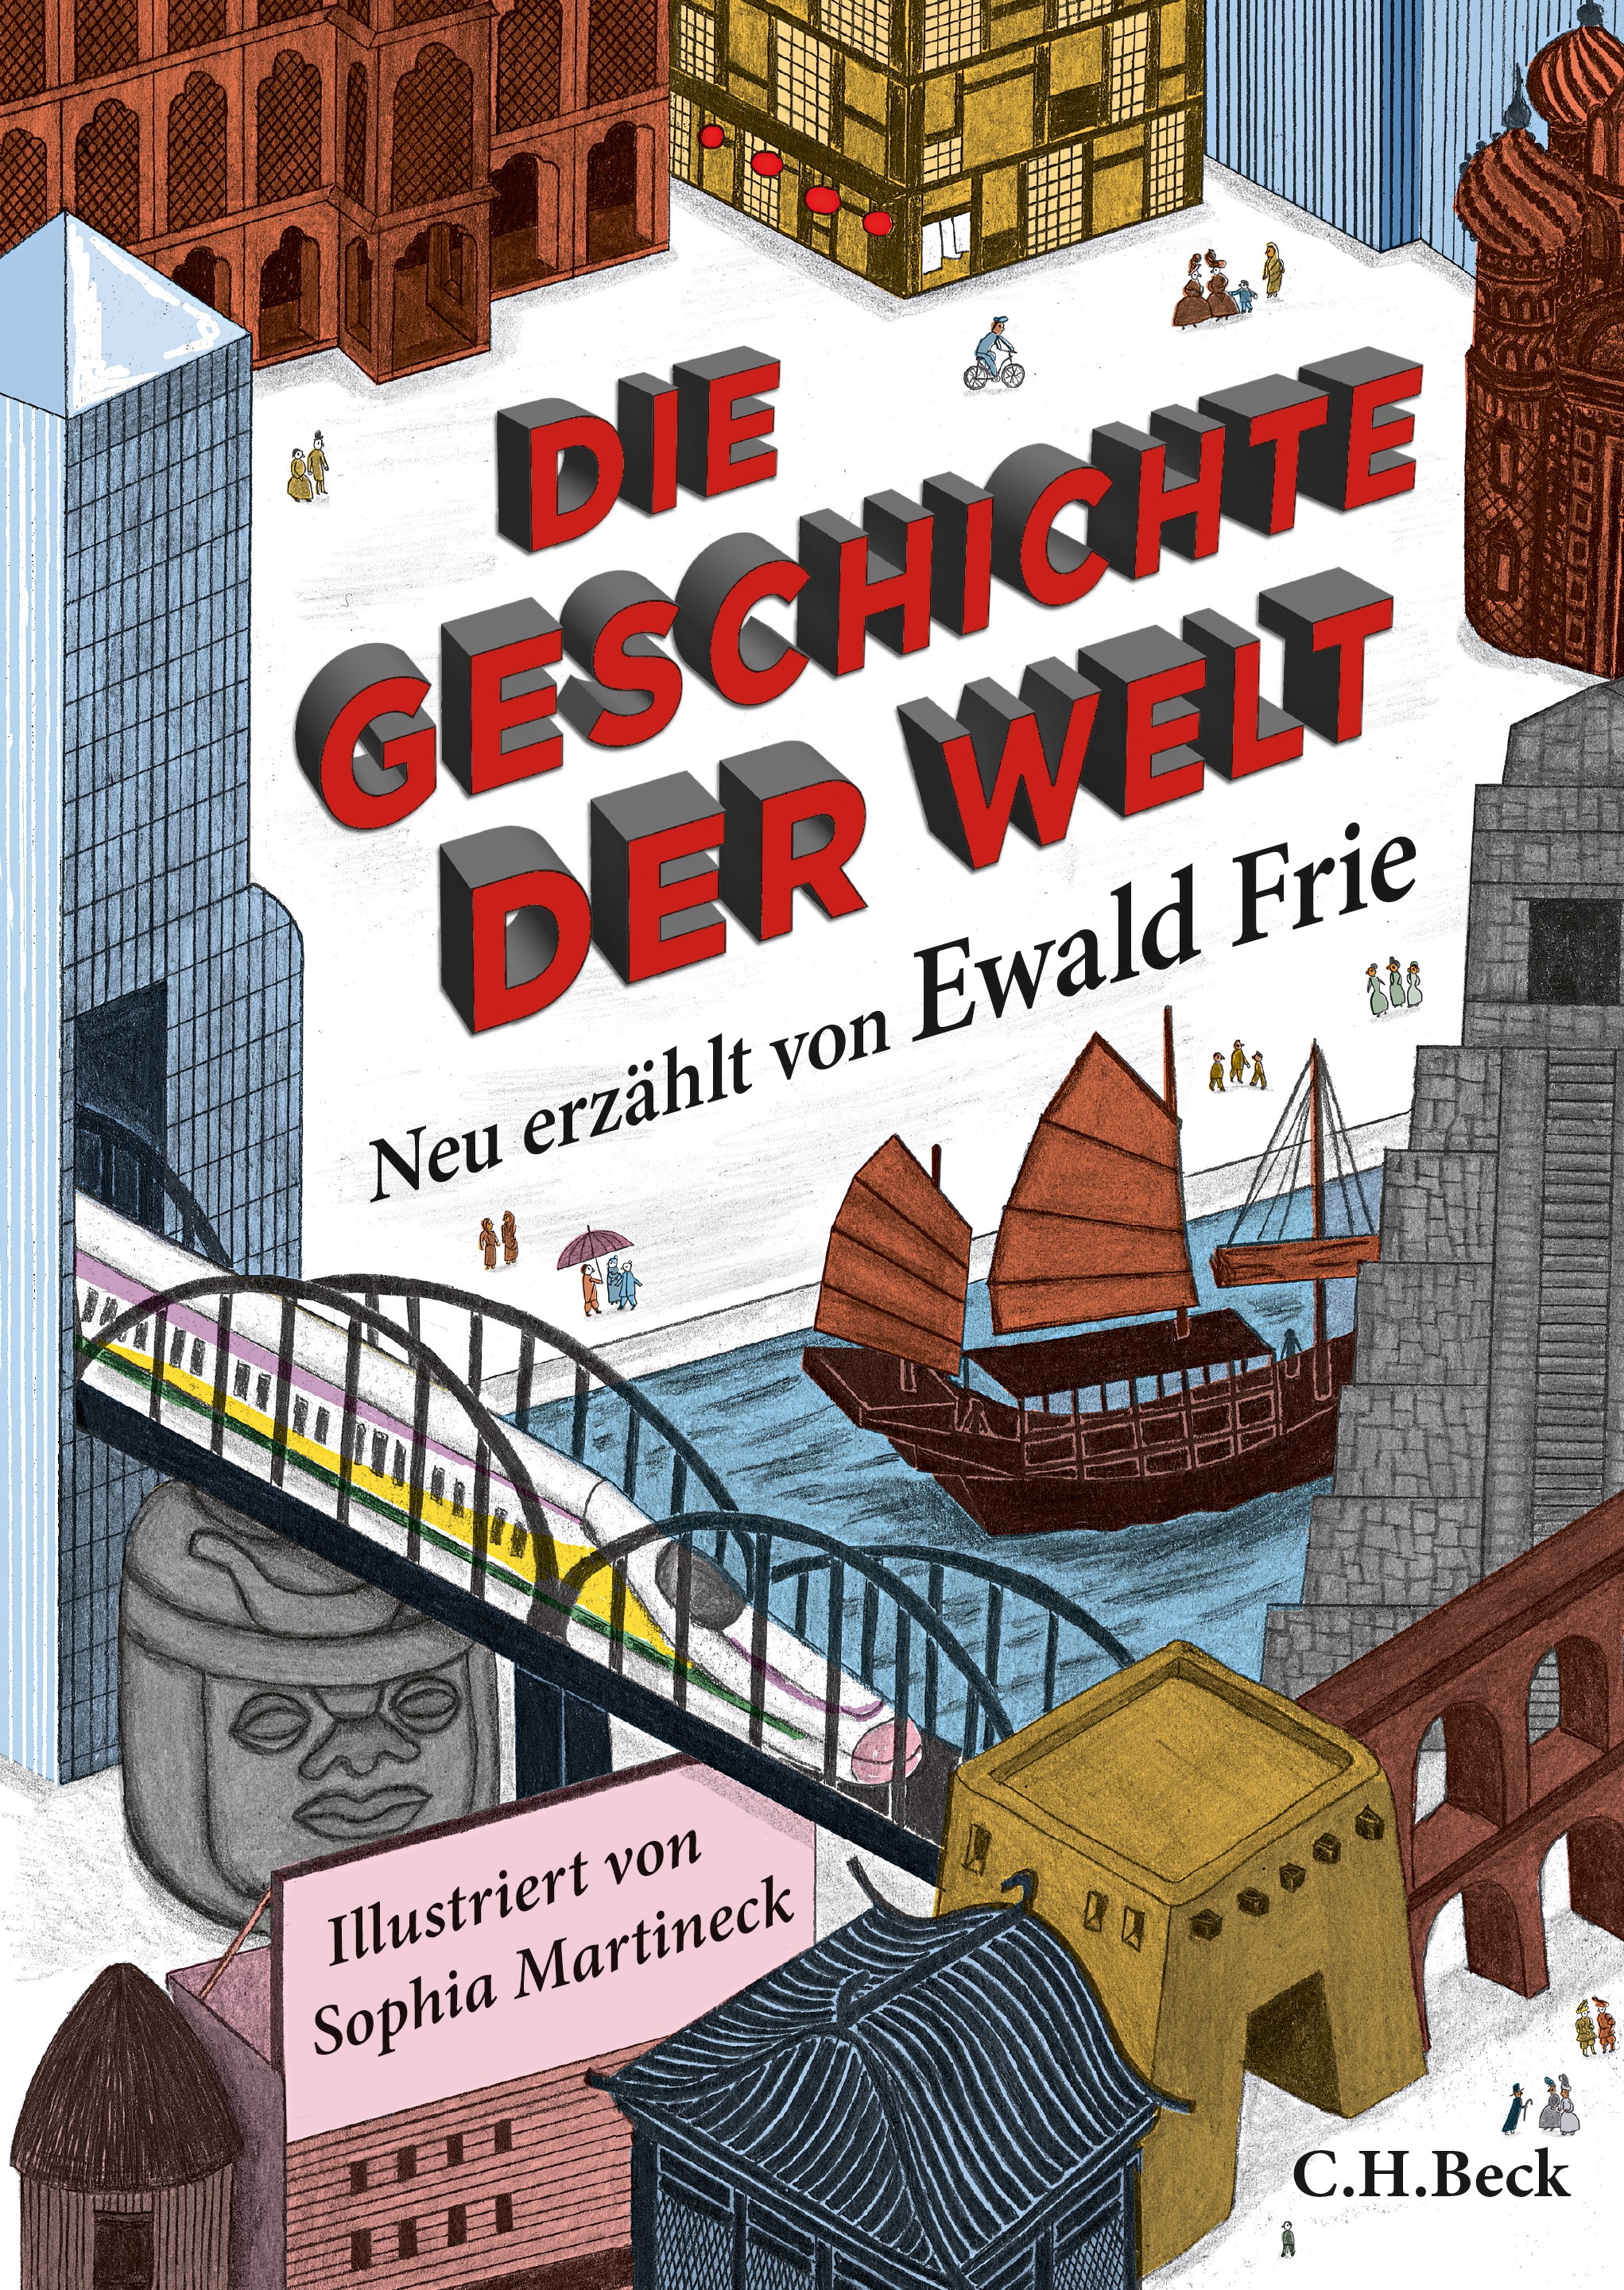 Cover: Frie, Ewald, Die Geschichte der Welt